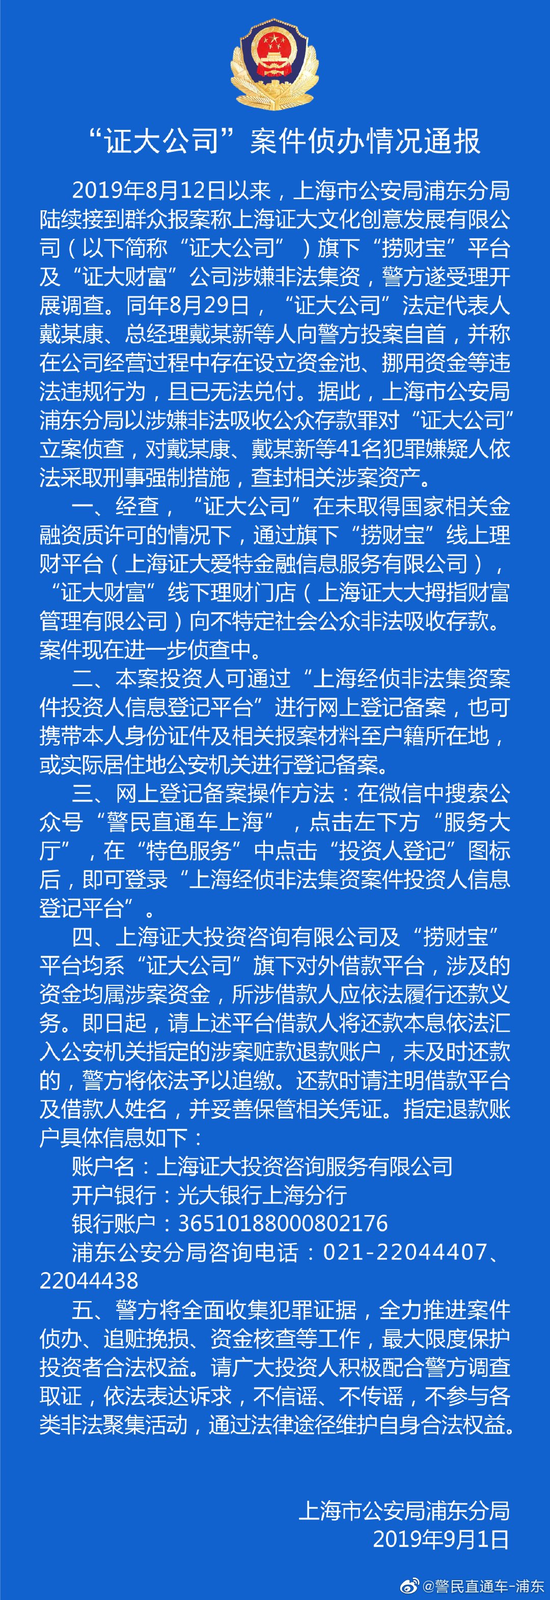 上海警方通报证大公司非法集资案 已刑拘41名嫌疑人